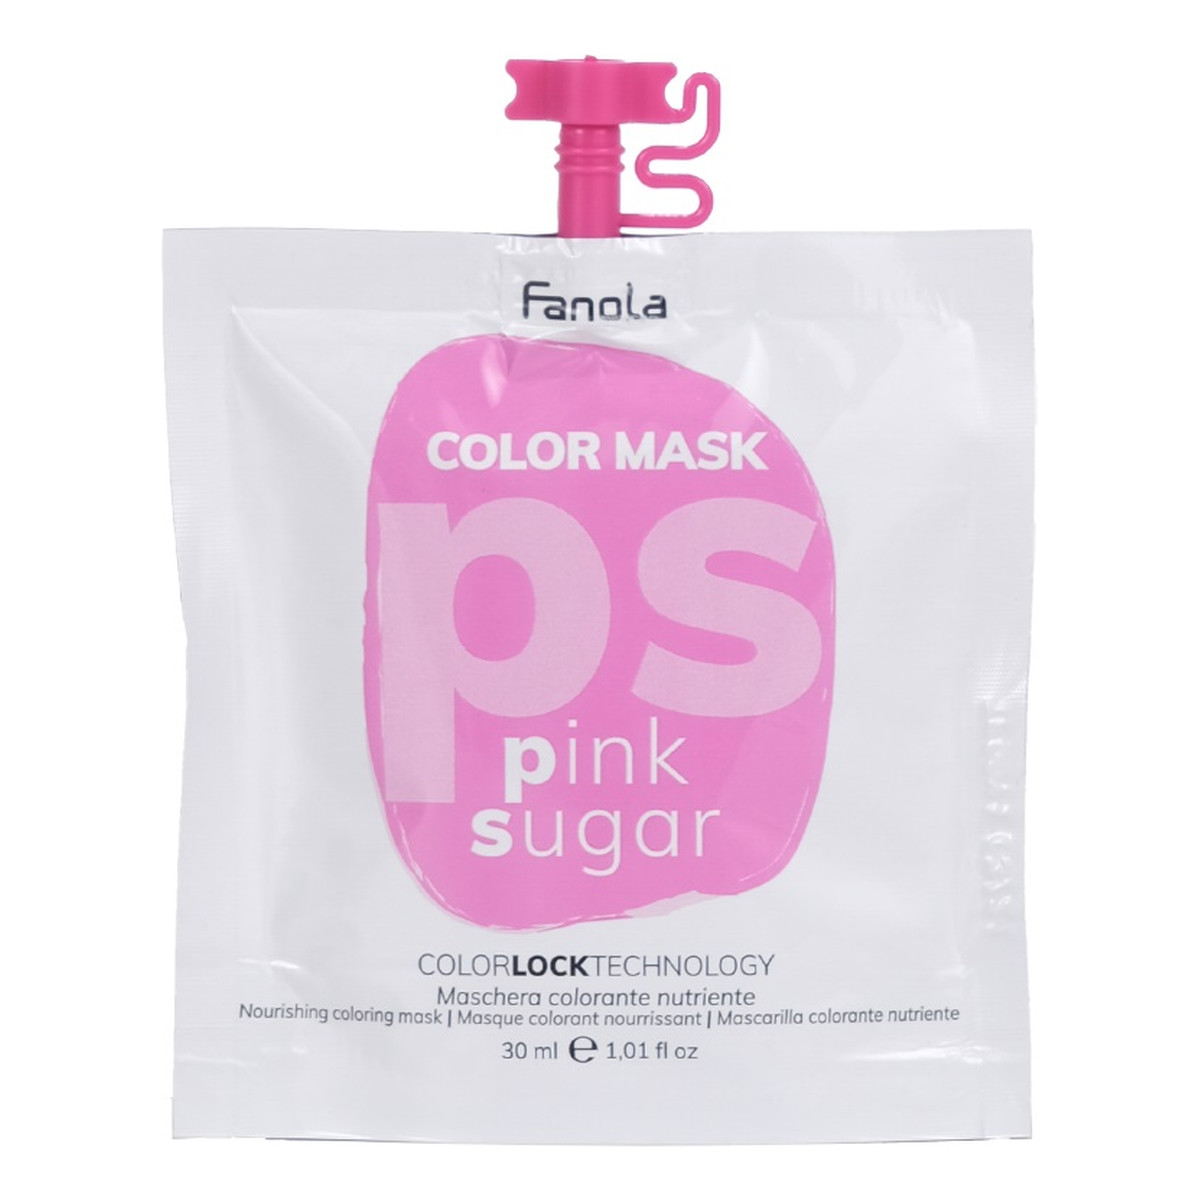 Fanola Color mask maska koloryzująca do włosów sugar pink 30ml